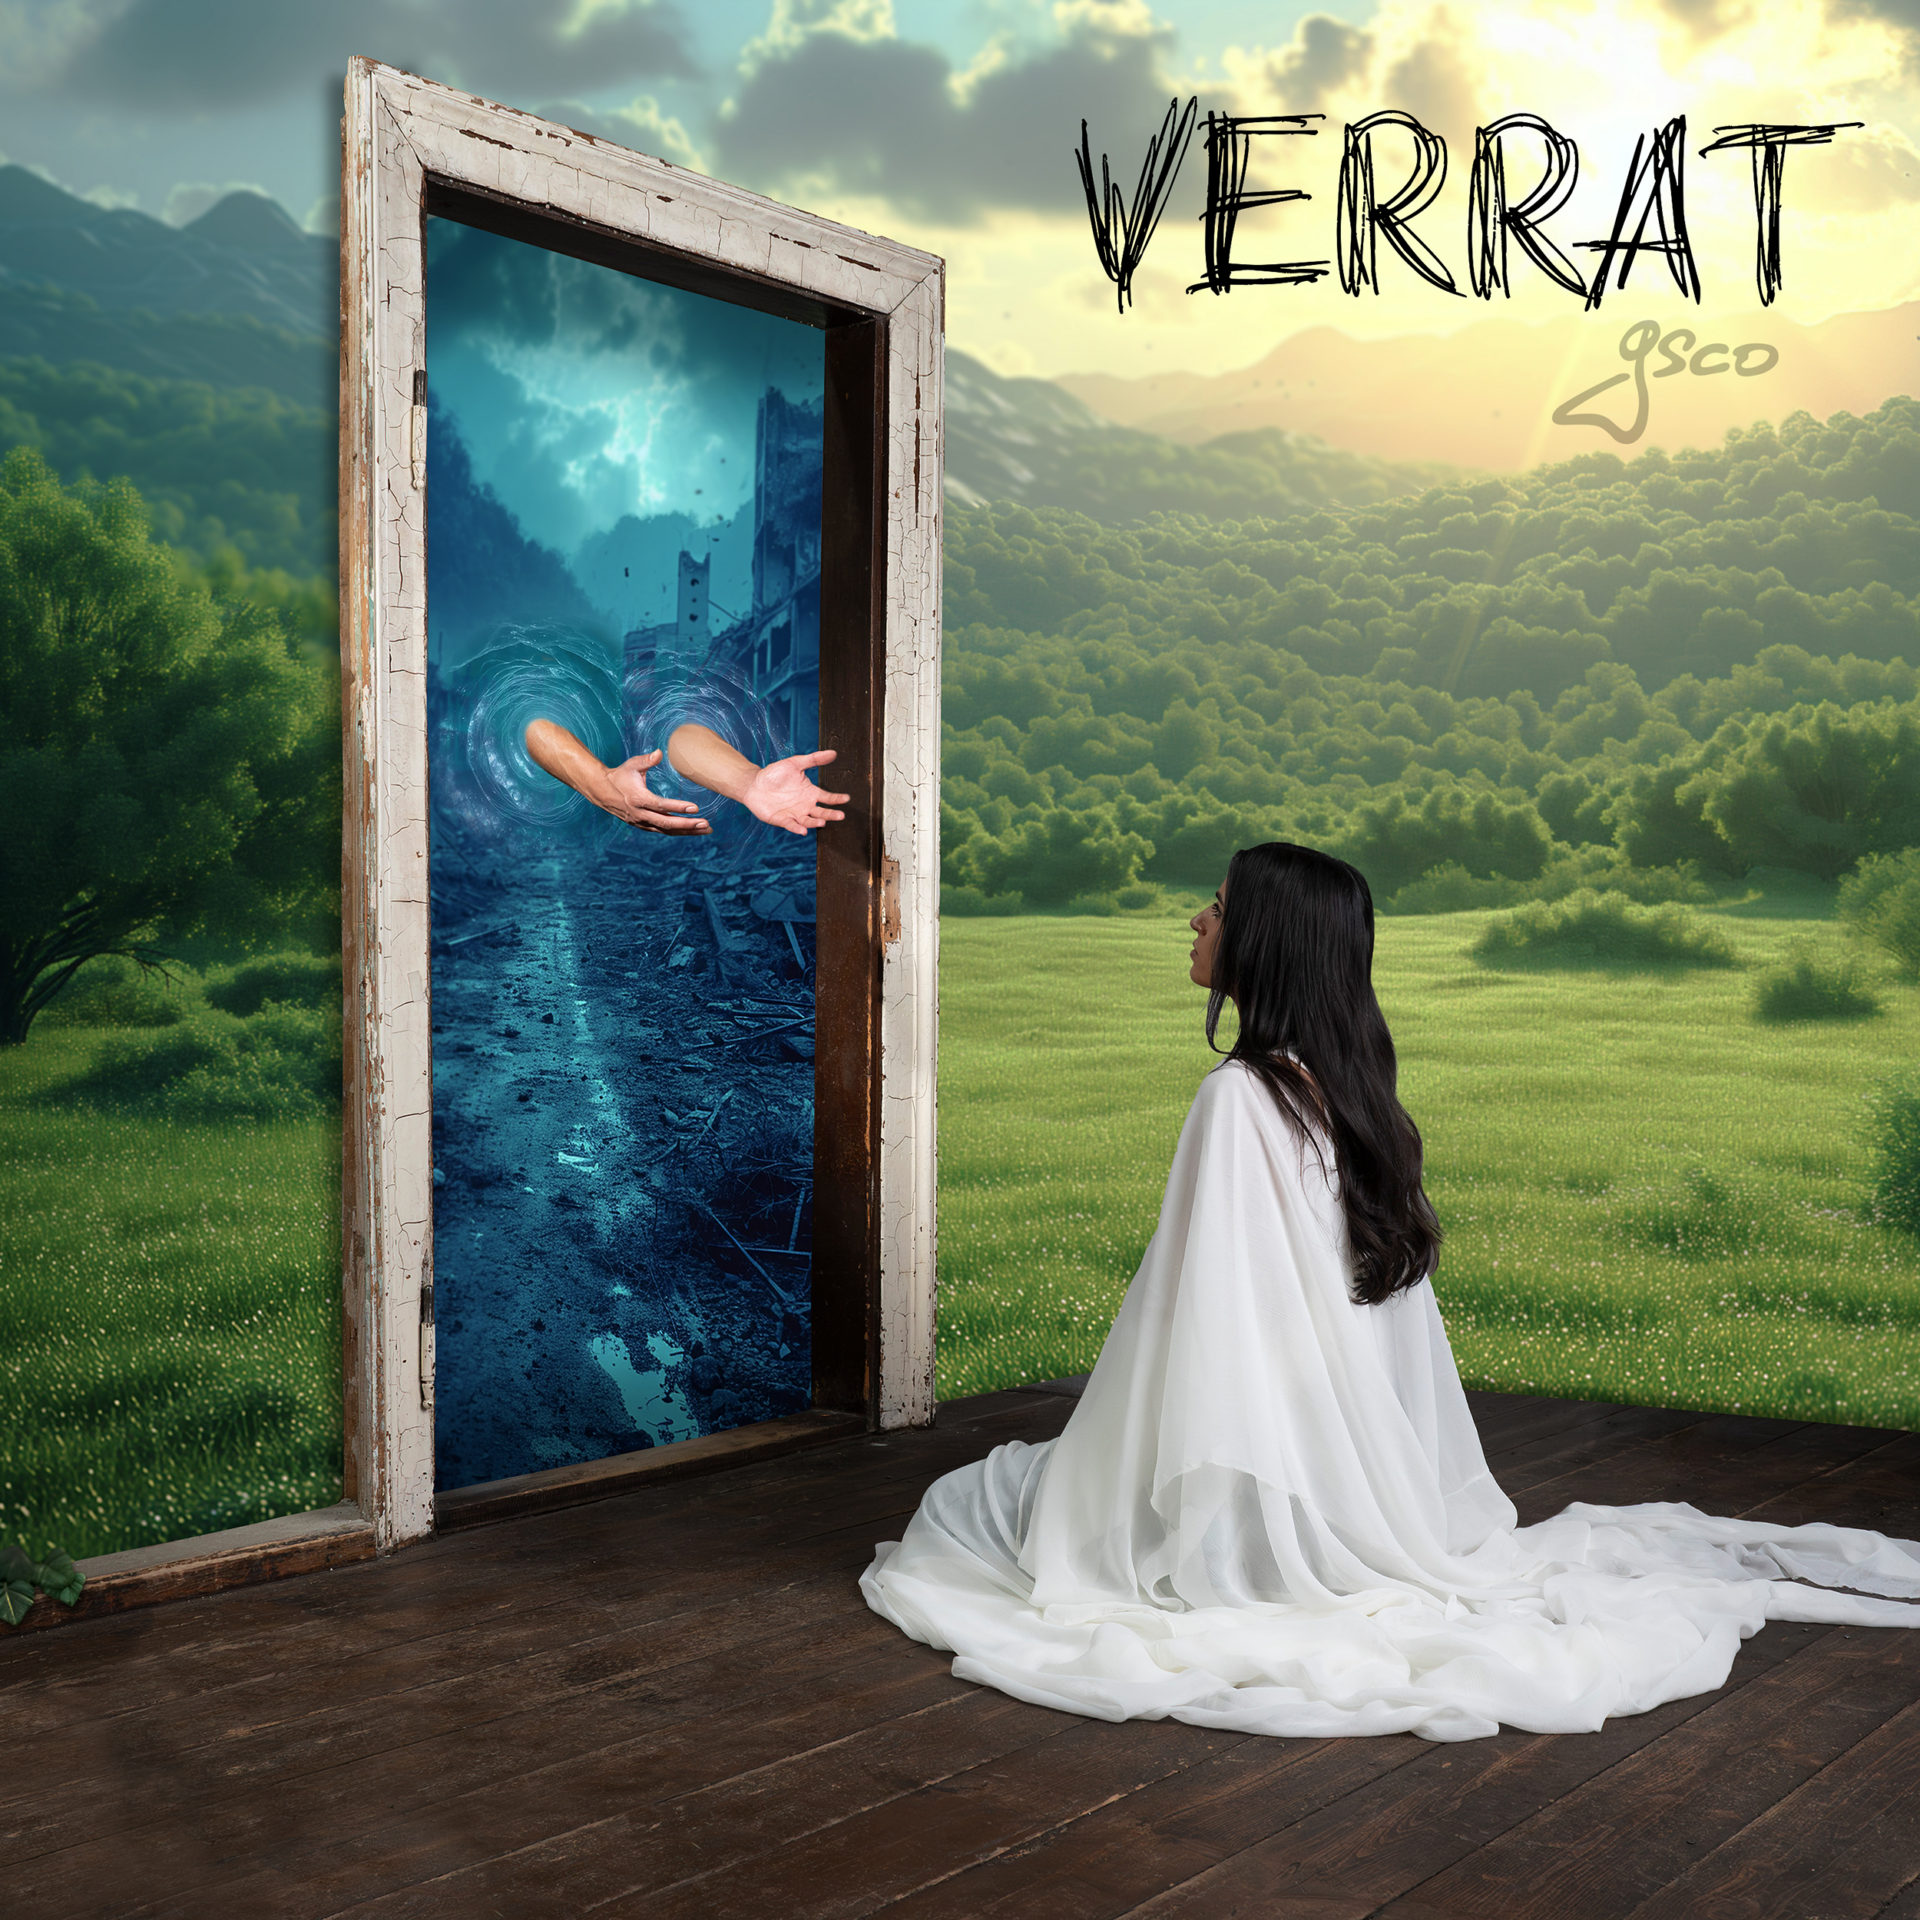 release – VERRAT